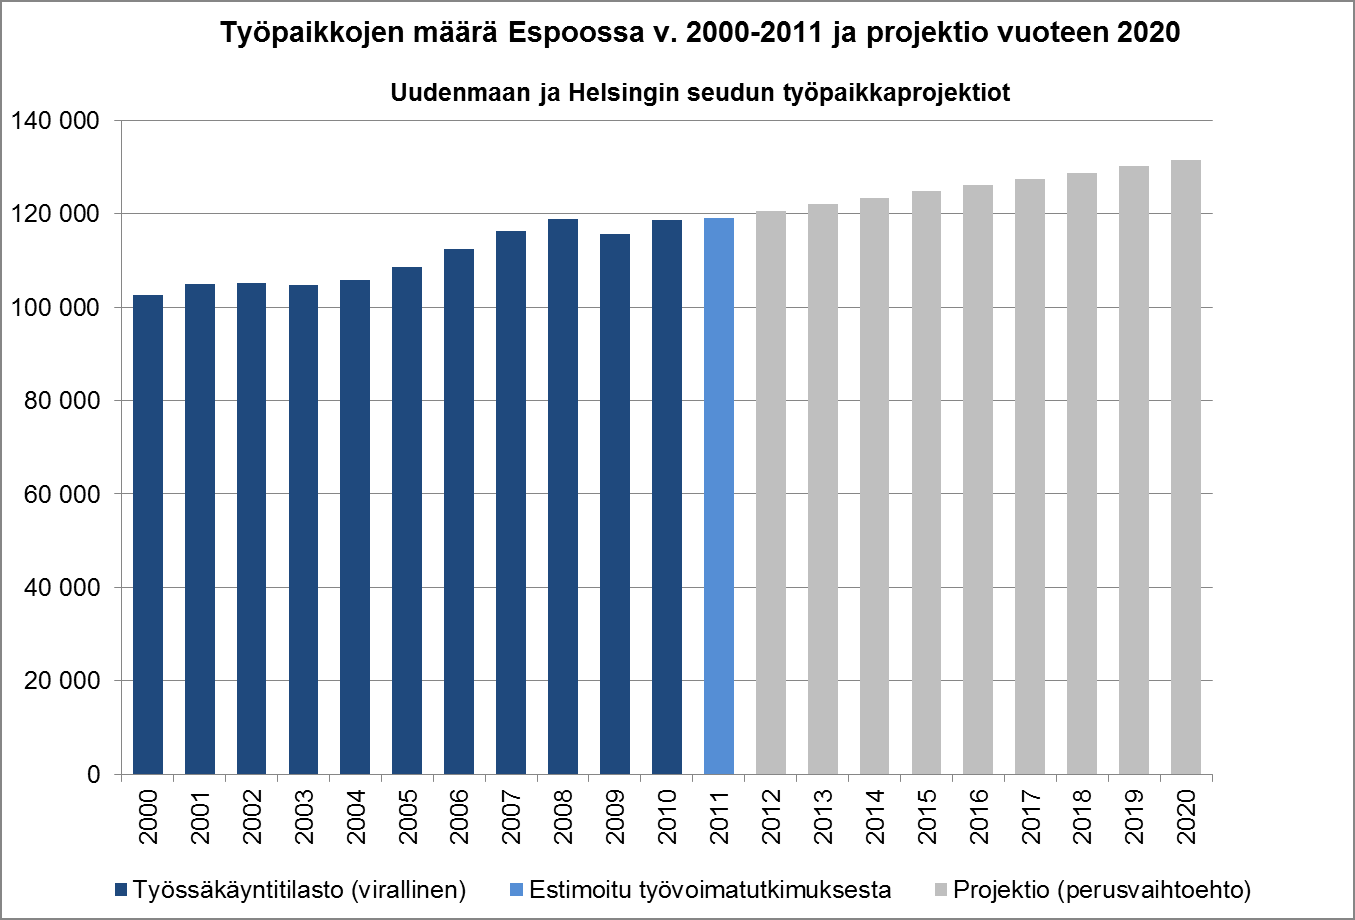 18 Työpaikat Vuonna 2012 laaditun Uudenmaan ja Helsingin seudun työpaikkaprojektion mukaan Espoossa on vuonna 2013 noin 122 000 työpaikkaa.